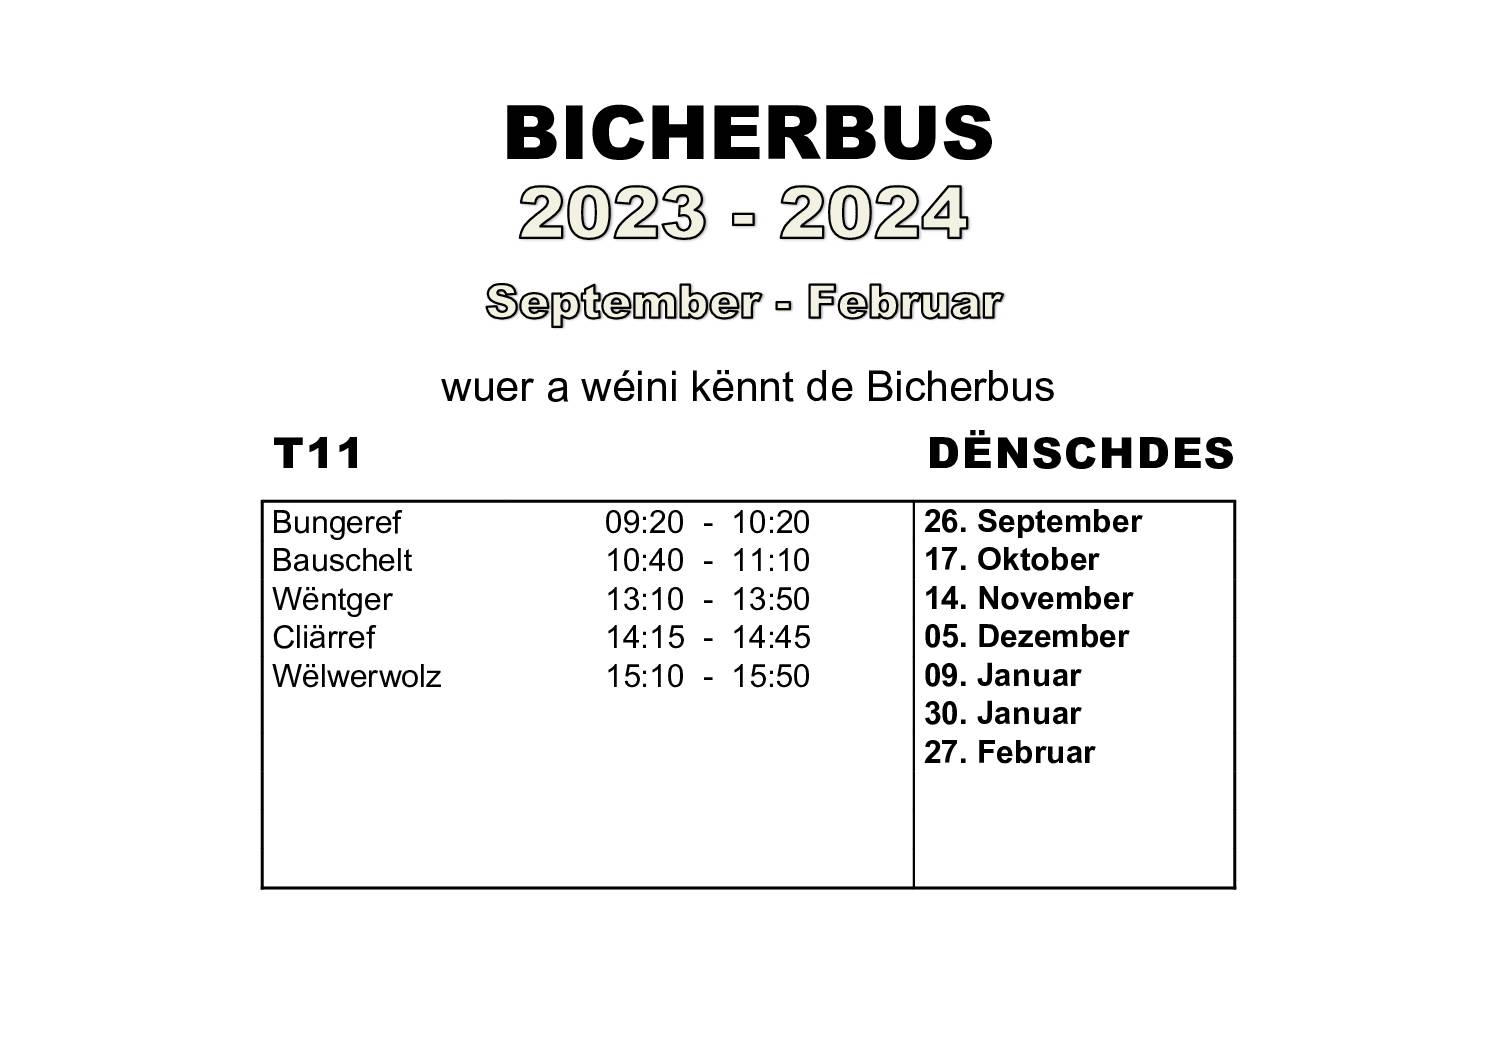 Bicherbus : programme septembre 2023 à février 2024